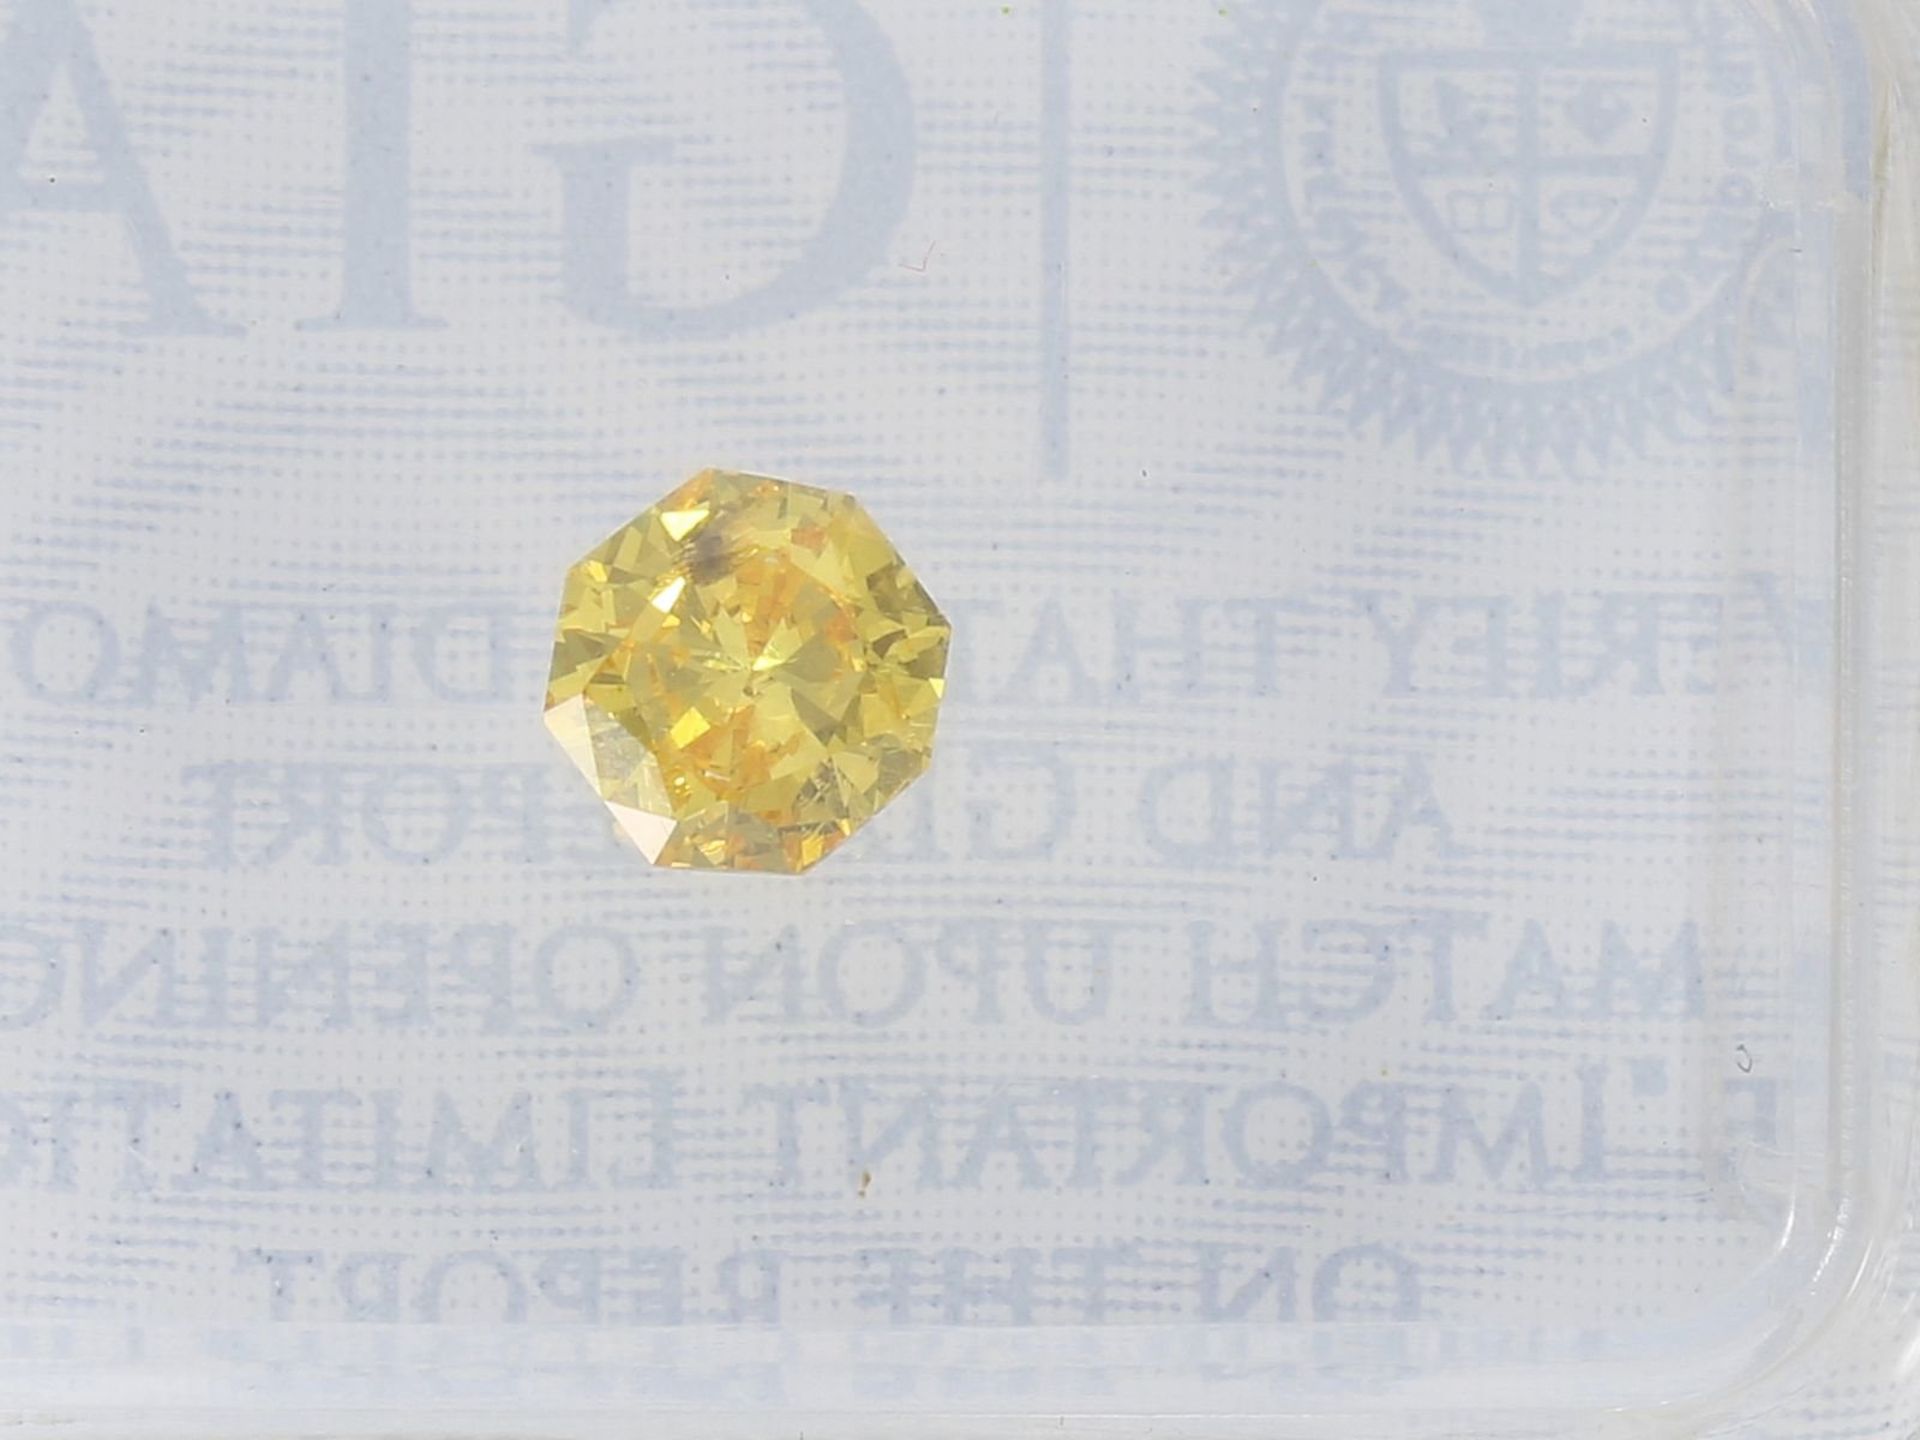 Brillant: natürlicher fancy Diamant von 0,28ct, extrem rare Farbe und außergewöhnlicher Schliff, - Bild 2 aus 2